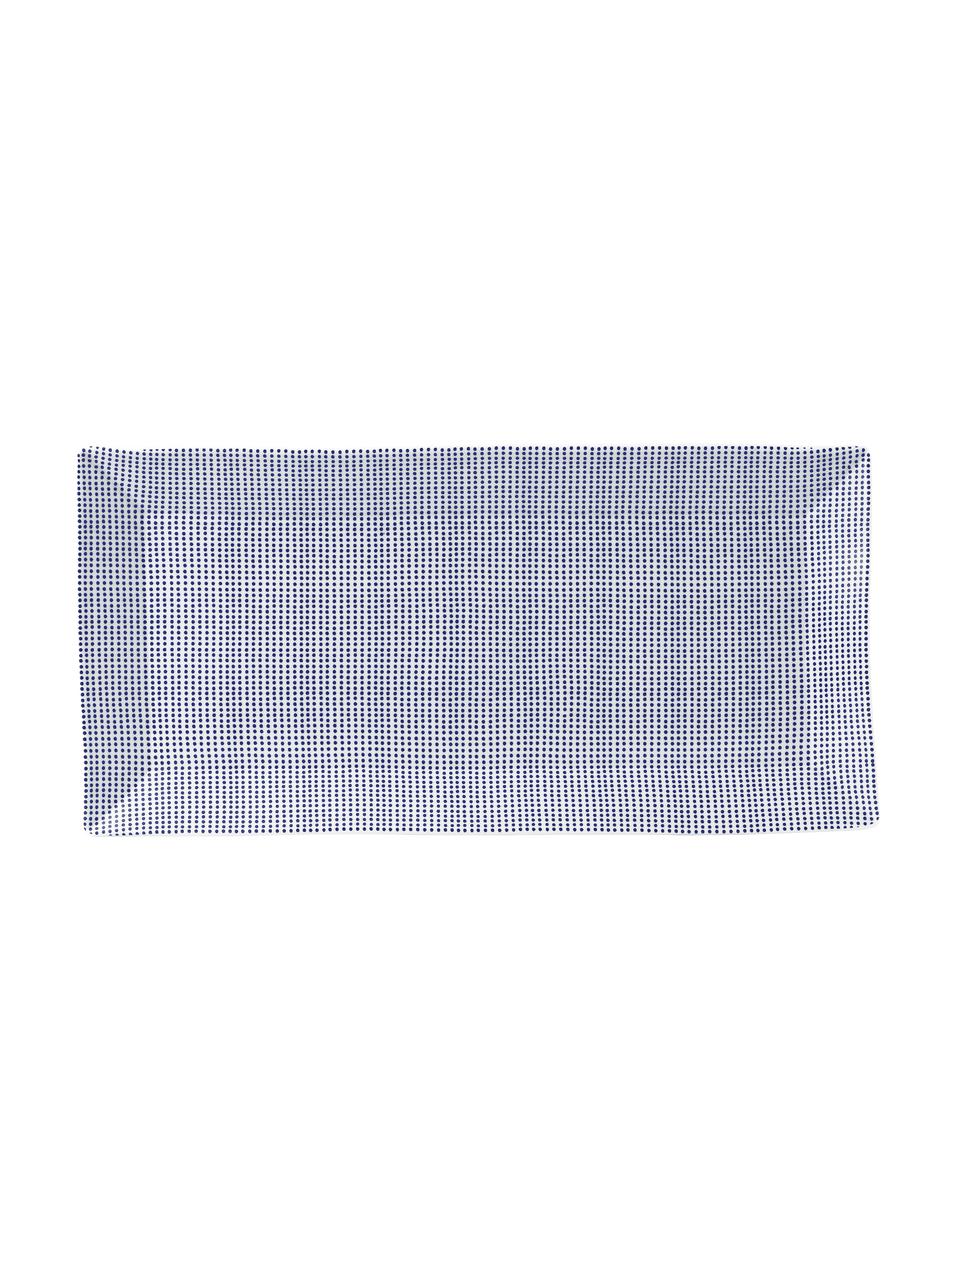 Porseleinen serveerplateau Pacific met patroon, Porselein, Wit, blauw, 18 x 39 cm